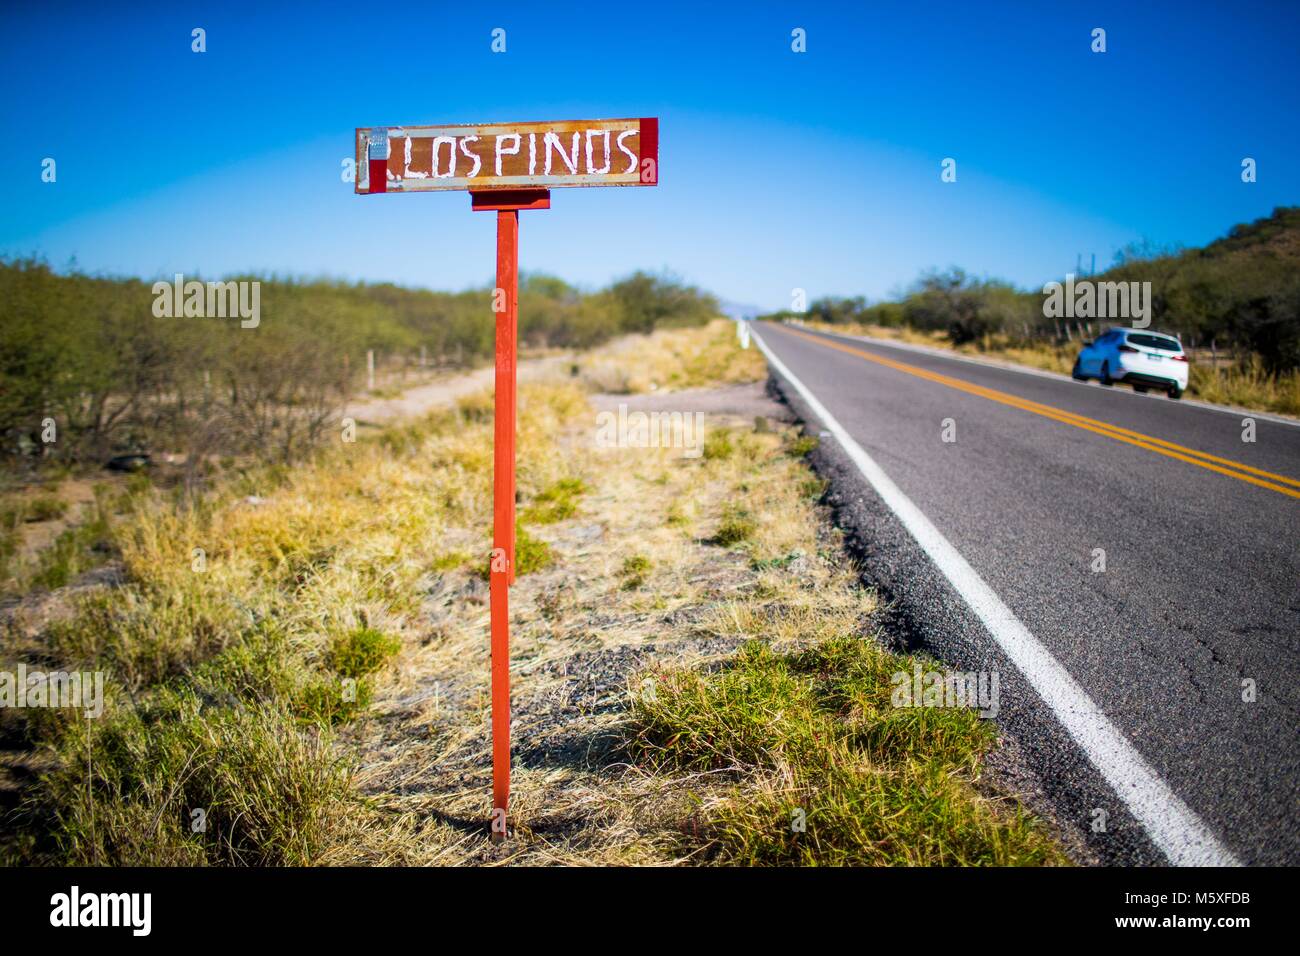 Letrero del Rancho los Pinos, sobre la carretera estatal rumbo un Cumpas y Moctezuma en Sonora Messico. pclaves: monte, rurale, nomenclatura, pasto, p Foto Stock